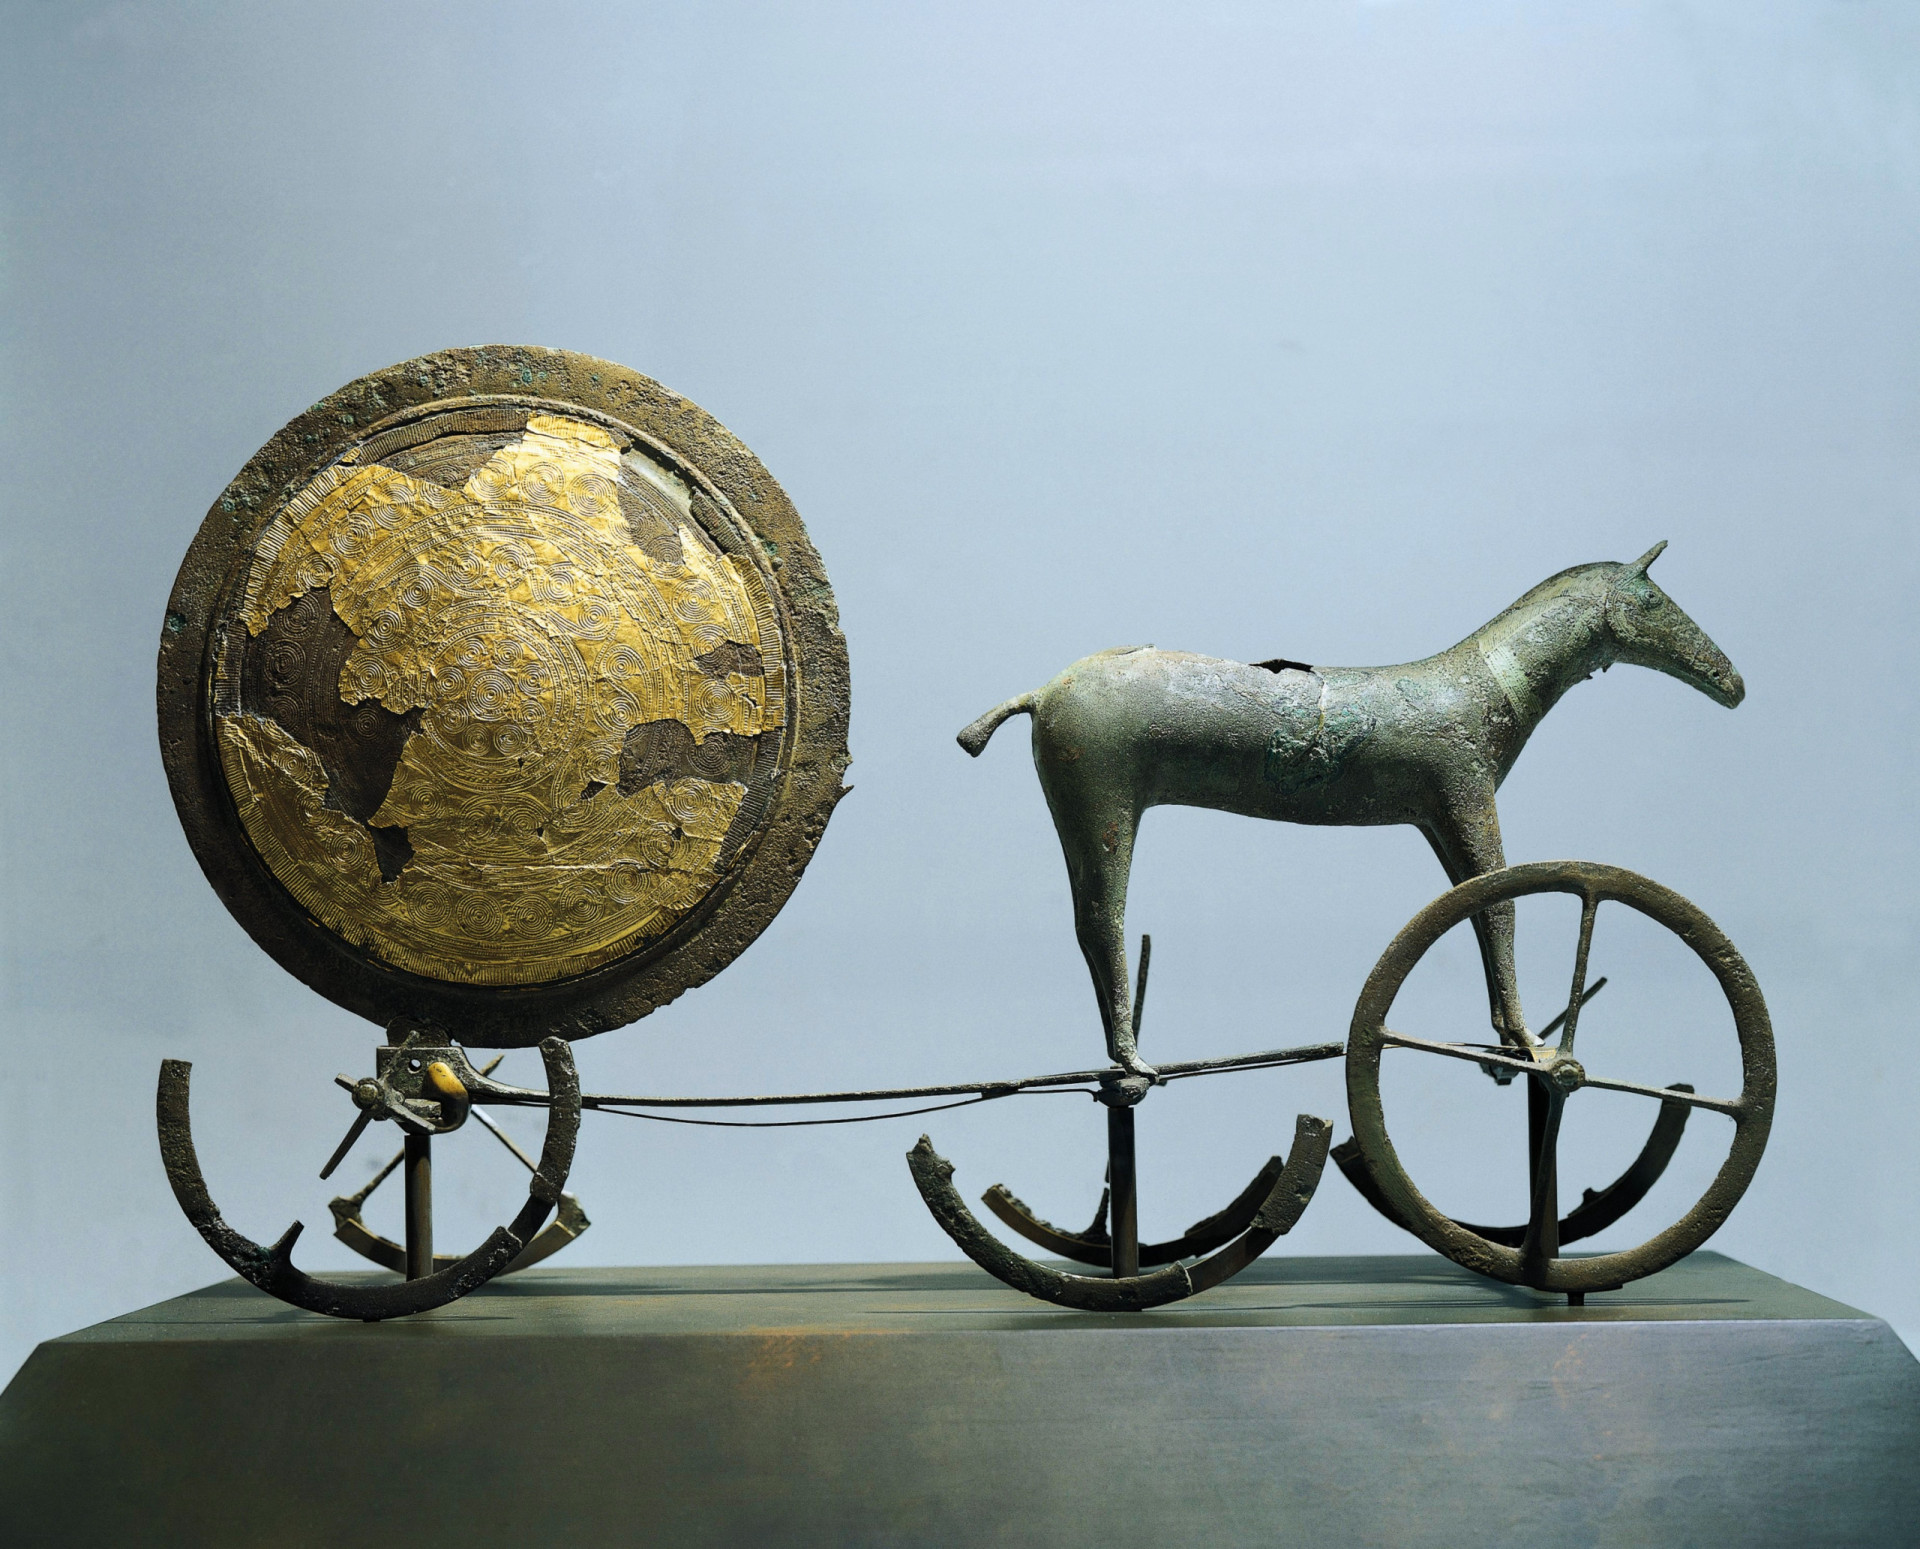 <p>Il conserve de précieux objets anciens, dont le char solaire de Trundholm, un trésor nordique de l'âge du bronze, partiellement recouvert d'or, déterré en 1902 dans une tourbière de l'île de Zélande.</p><p>Tu pourrais aussi aimer:<a href="https://www.starsinsider.com/n/150354?utm_source=msn.com&utm_medium=display&utm_campaign=referral_description&utm_content=525365v2"> Où en sont ces actrices des années 1990 ?</a></p>